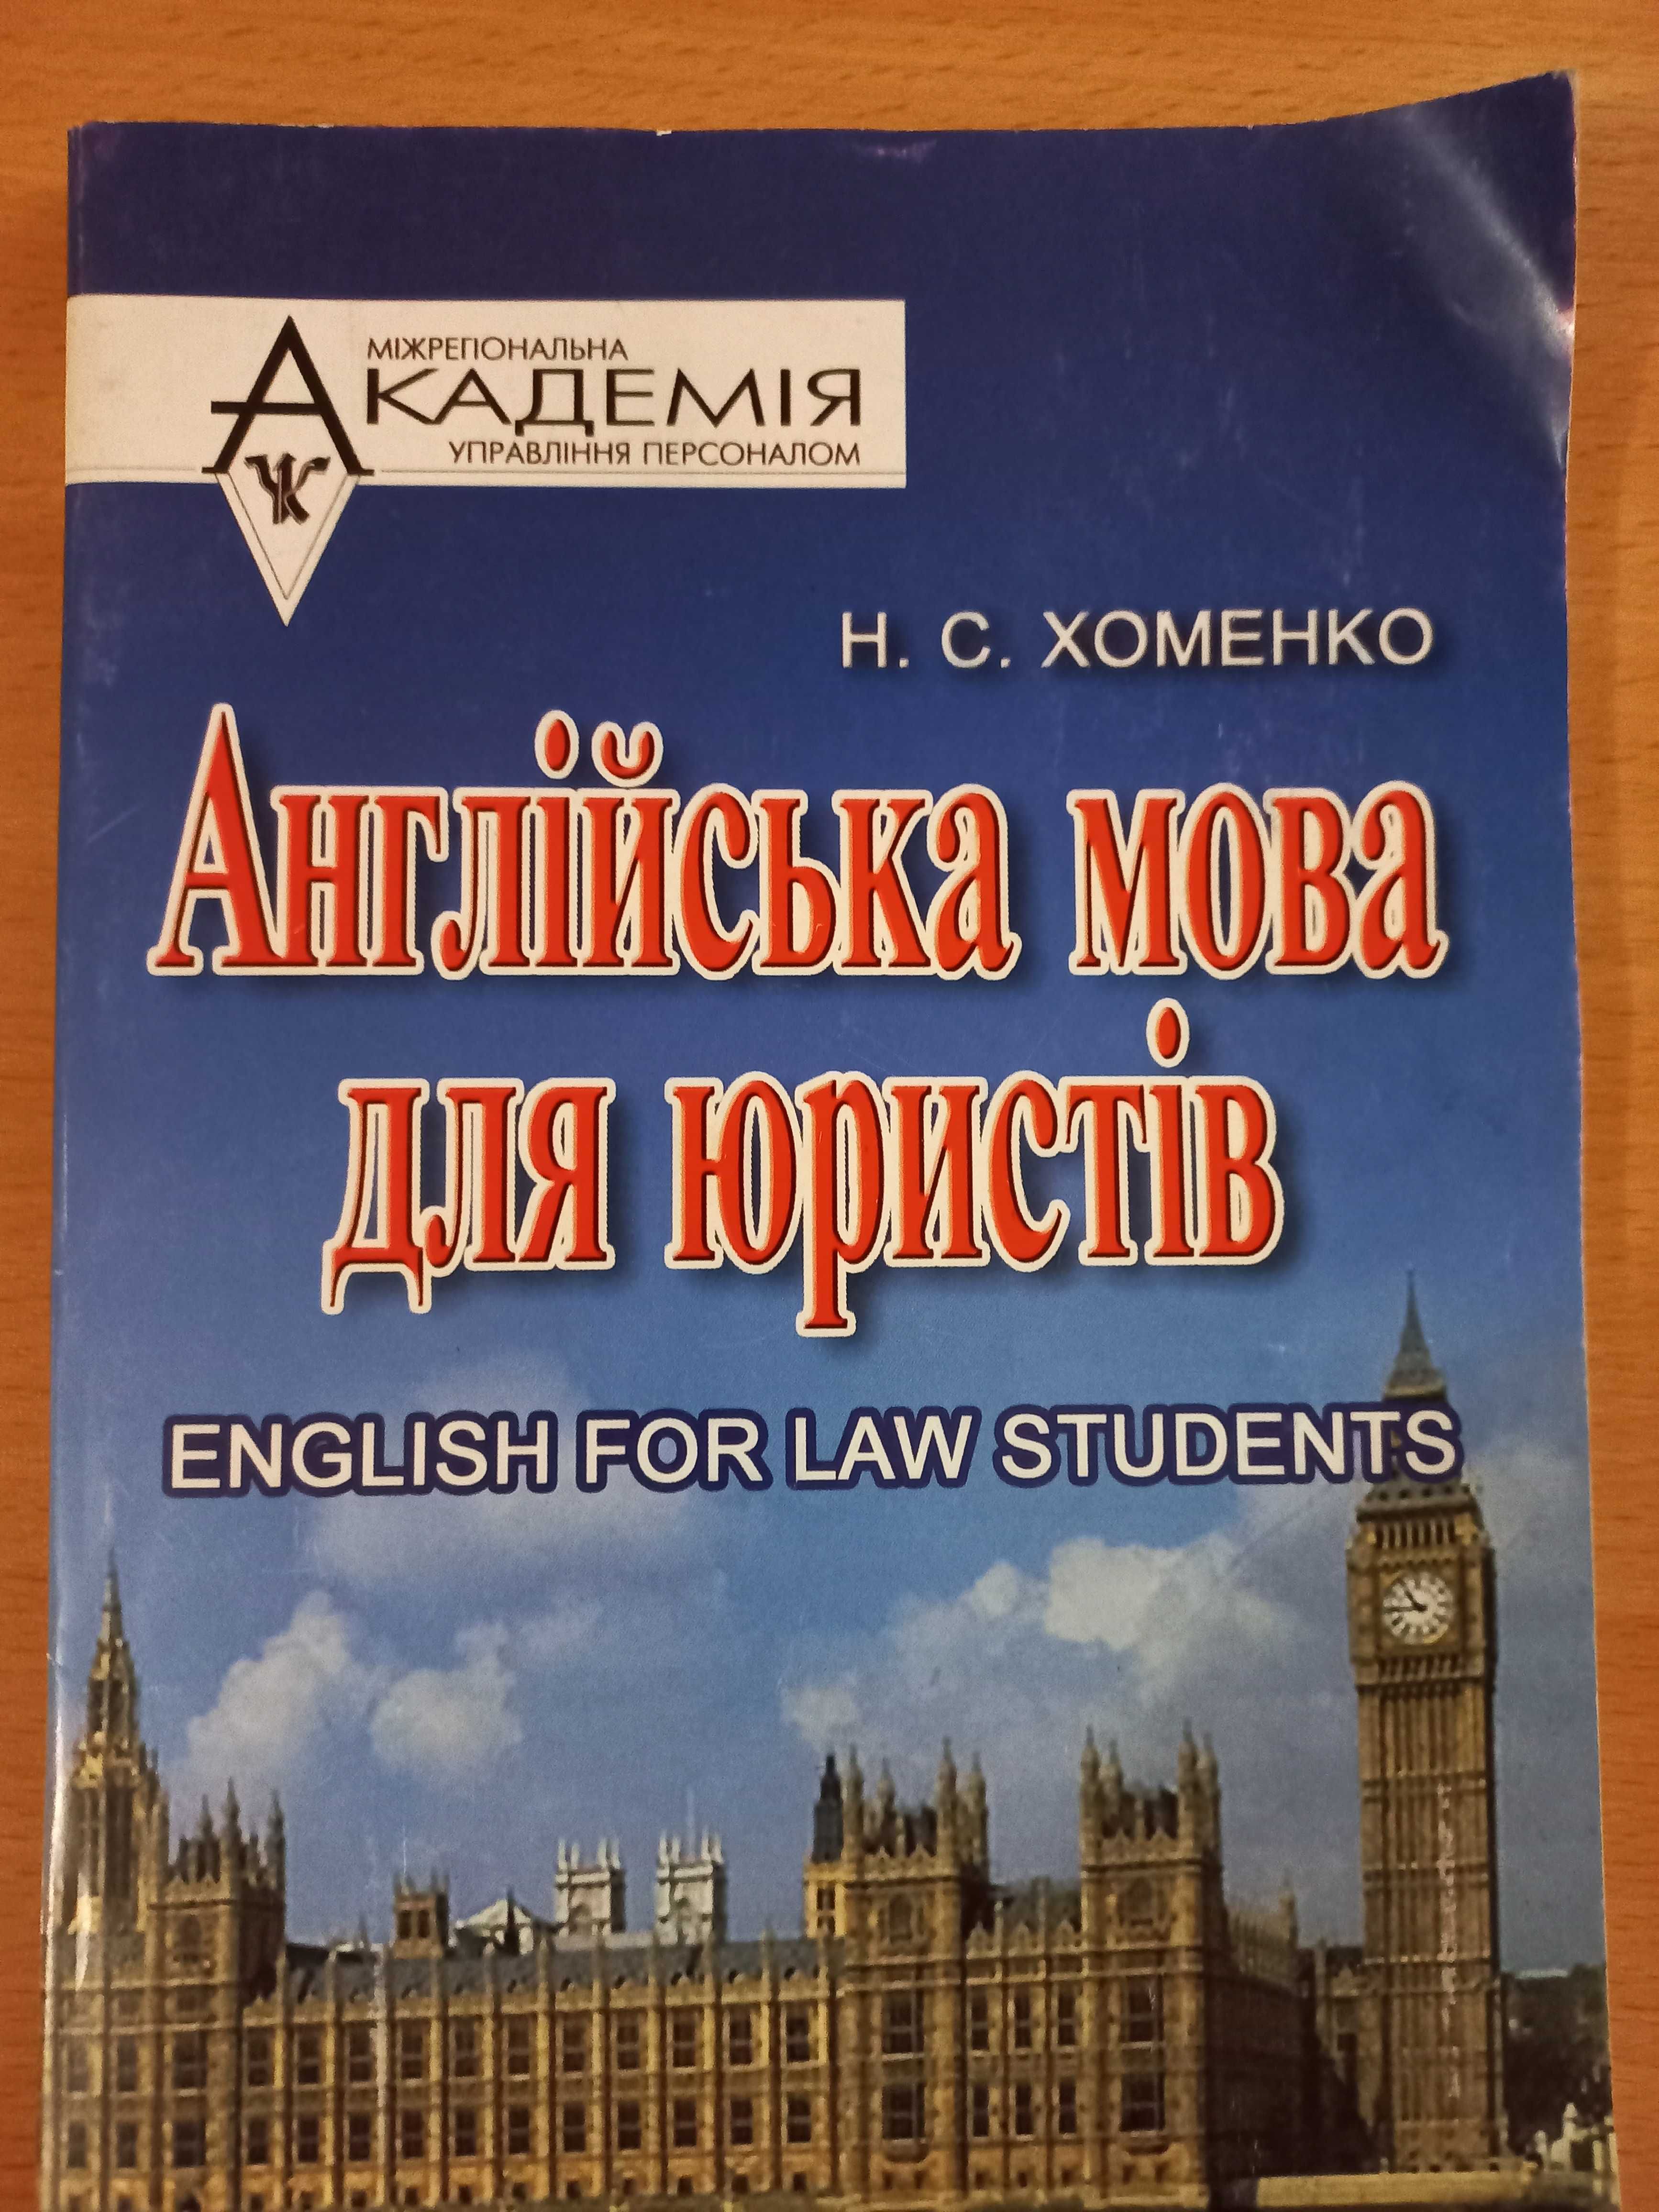 СРОЧНО!!! Обучающие пособия по английскому языку для юристов